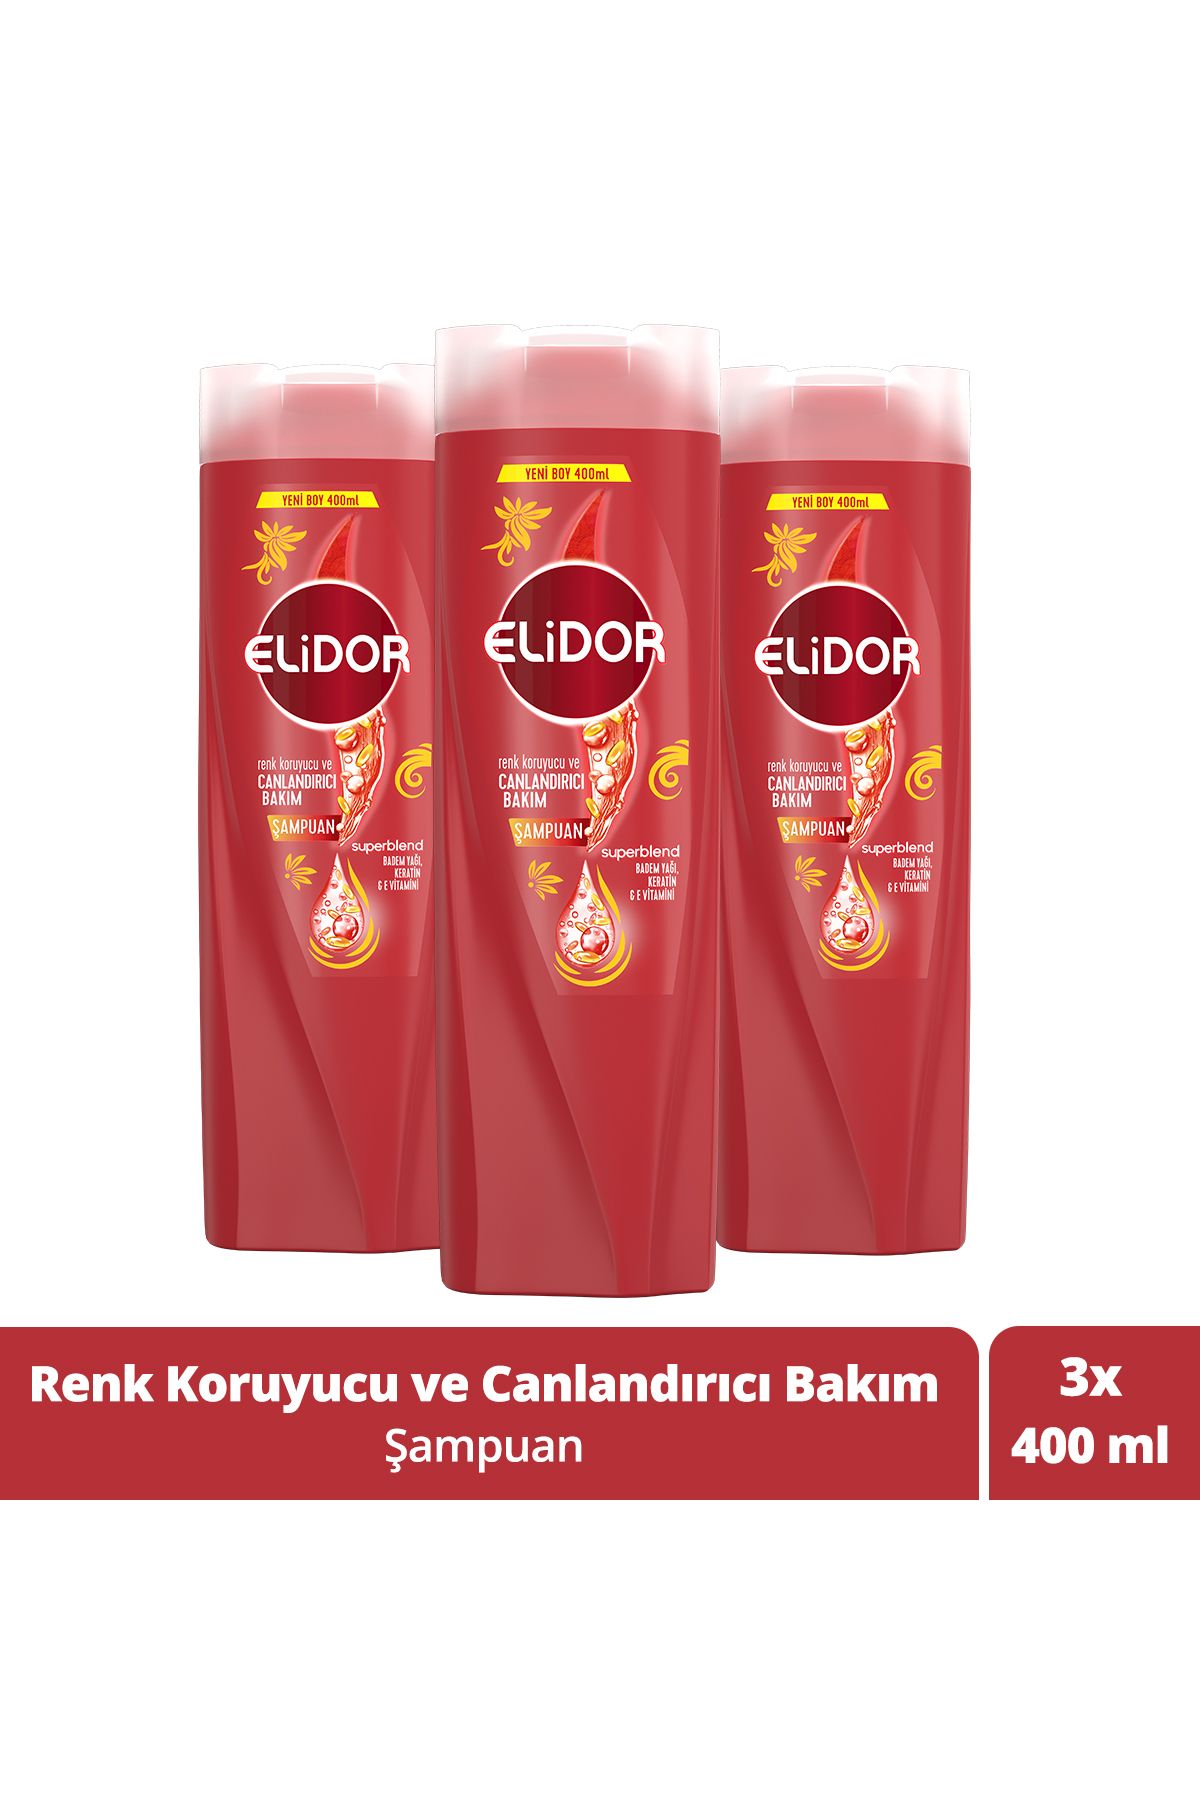 Elidor Superblend Saç Bakım Şampuanı Renk Koruyucu Ve Canlandırıcı Bakım 400 ml X3 Adet